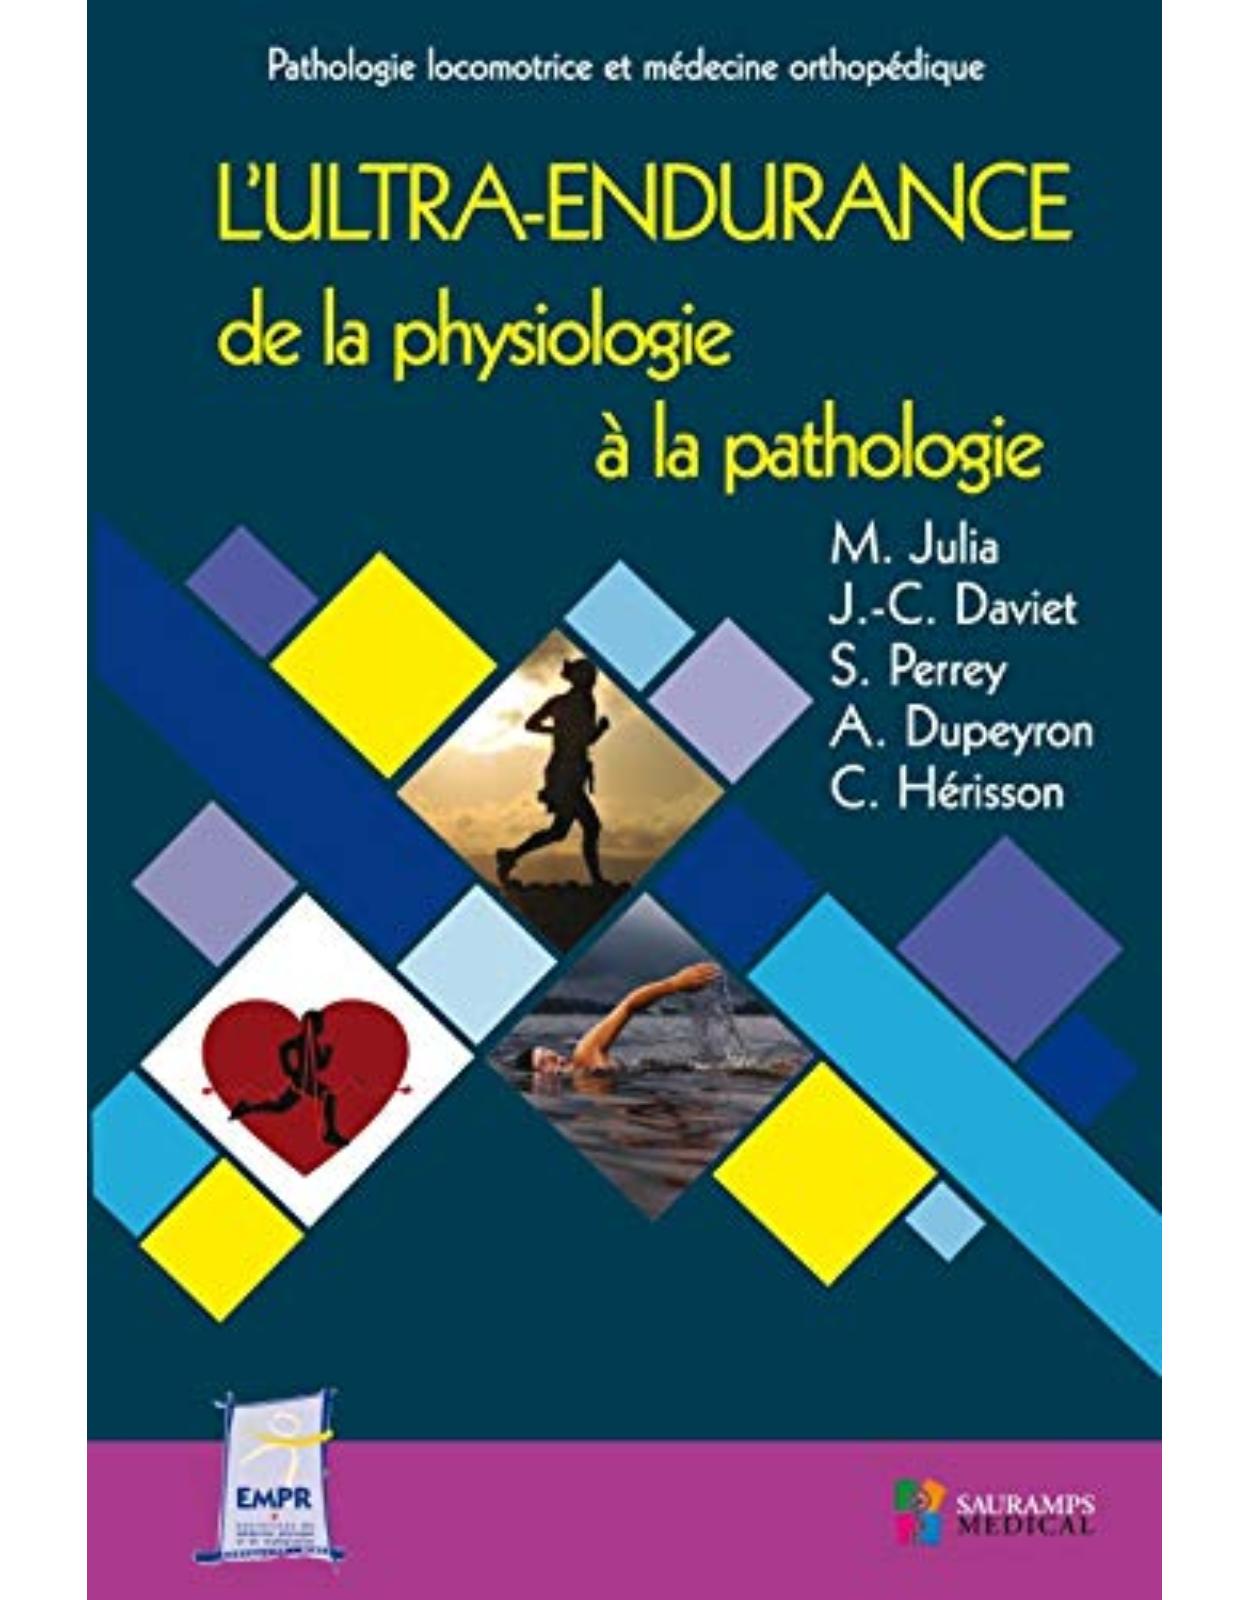 L'ULTRA-ENDURANCE DE LA PHYSIOLOGIE A LA PATHOLOGIE